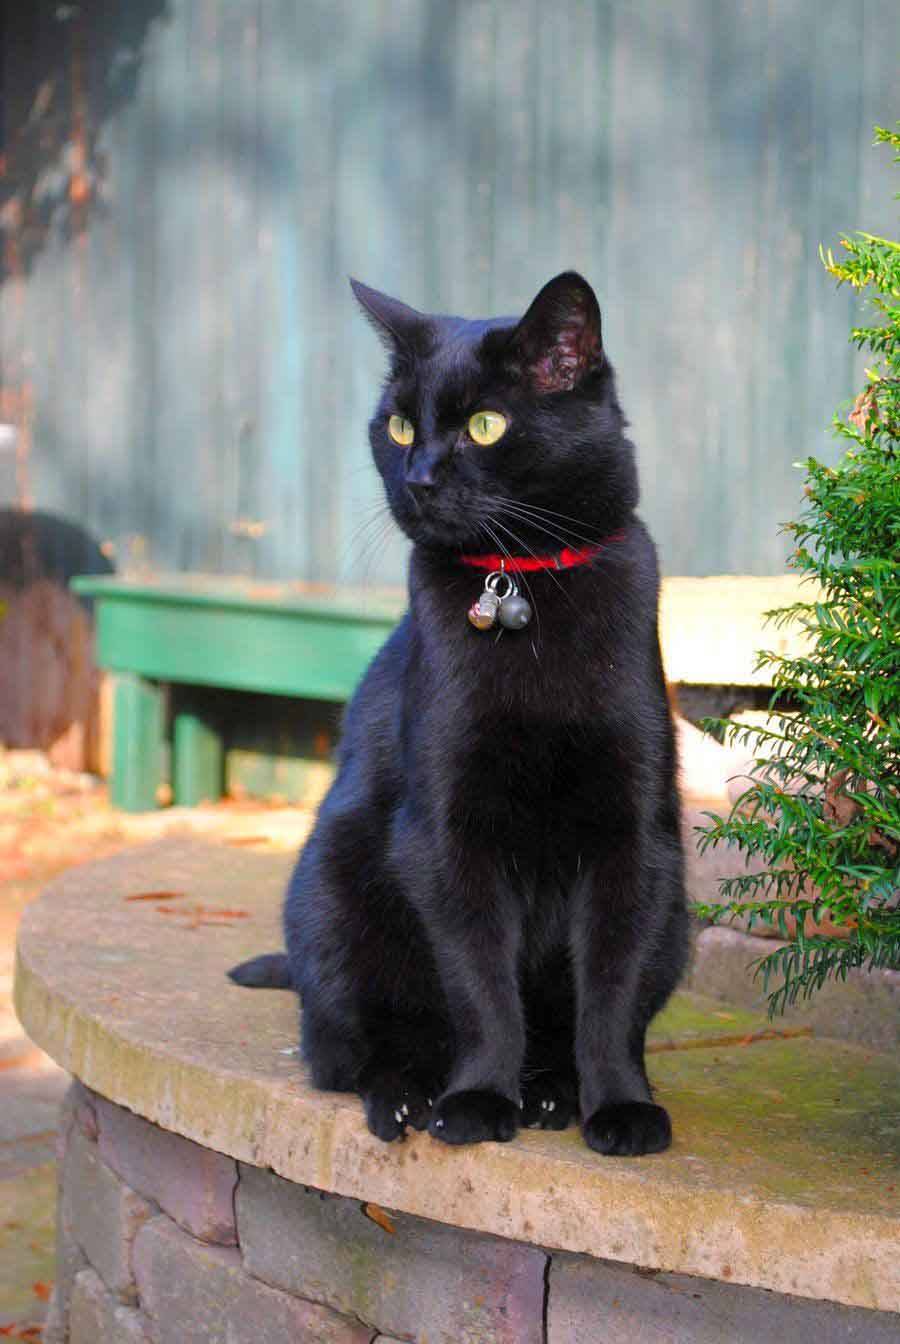 Бомбейская кошка, или бомбей: описание породы, характер, цена, содержание и уход, фото